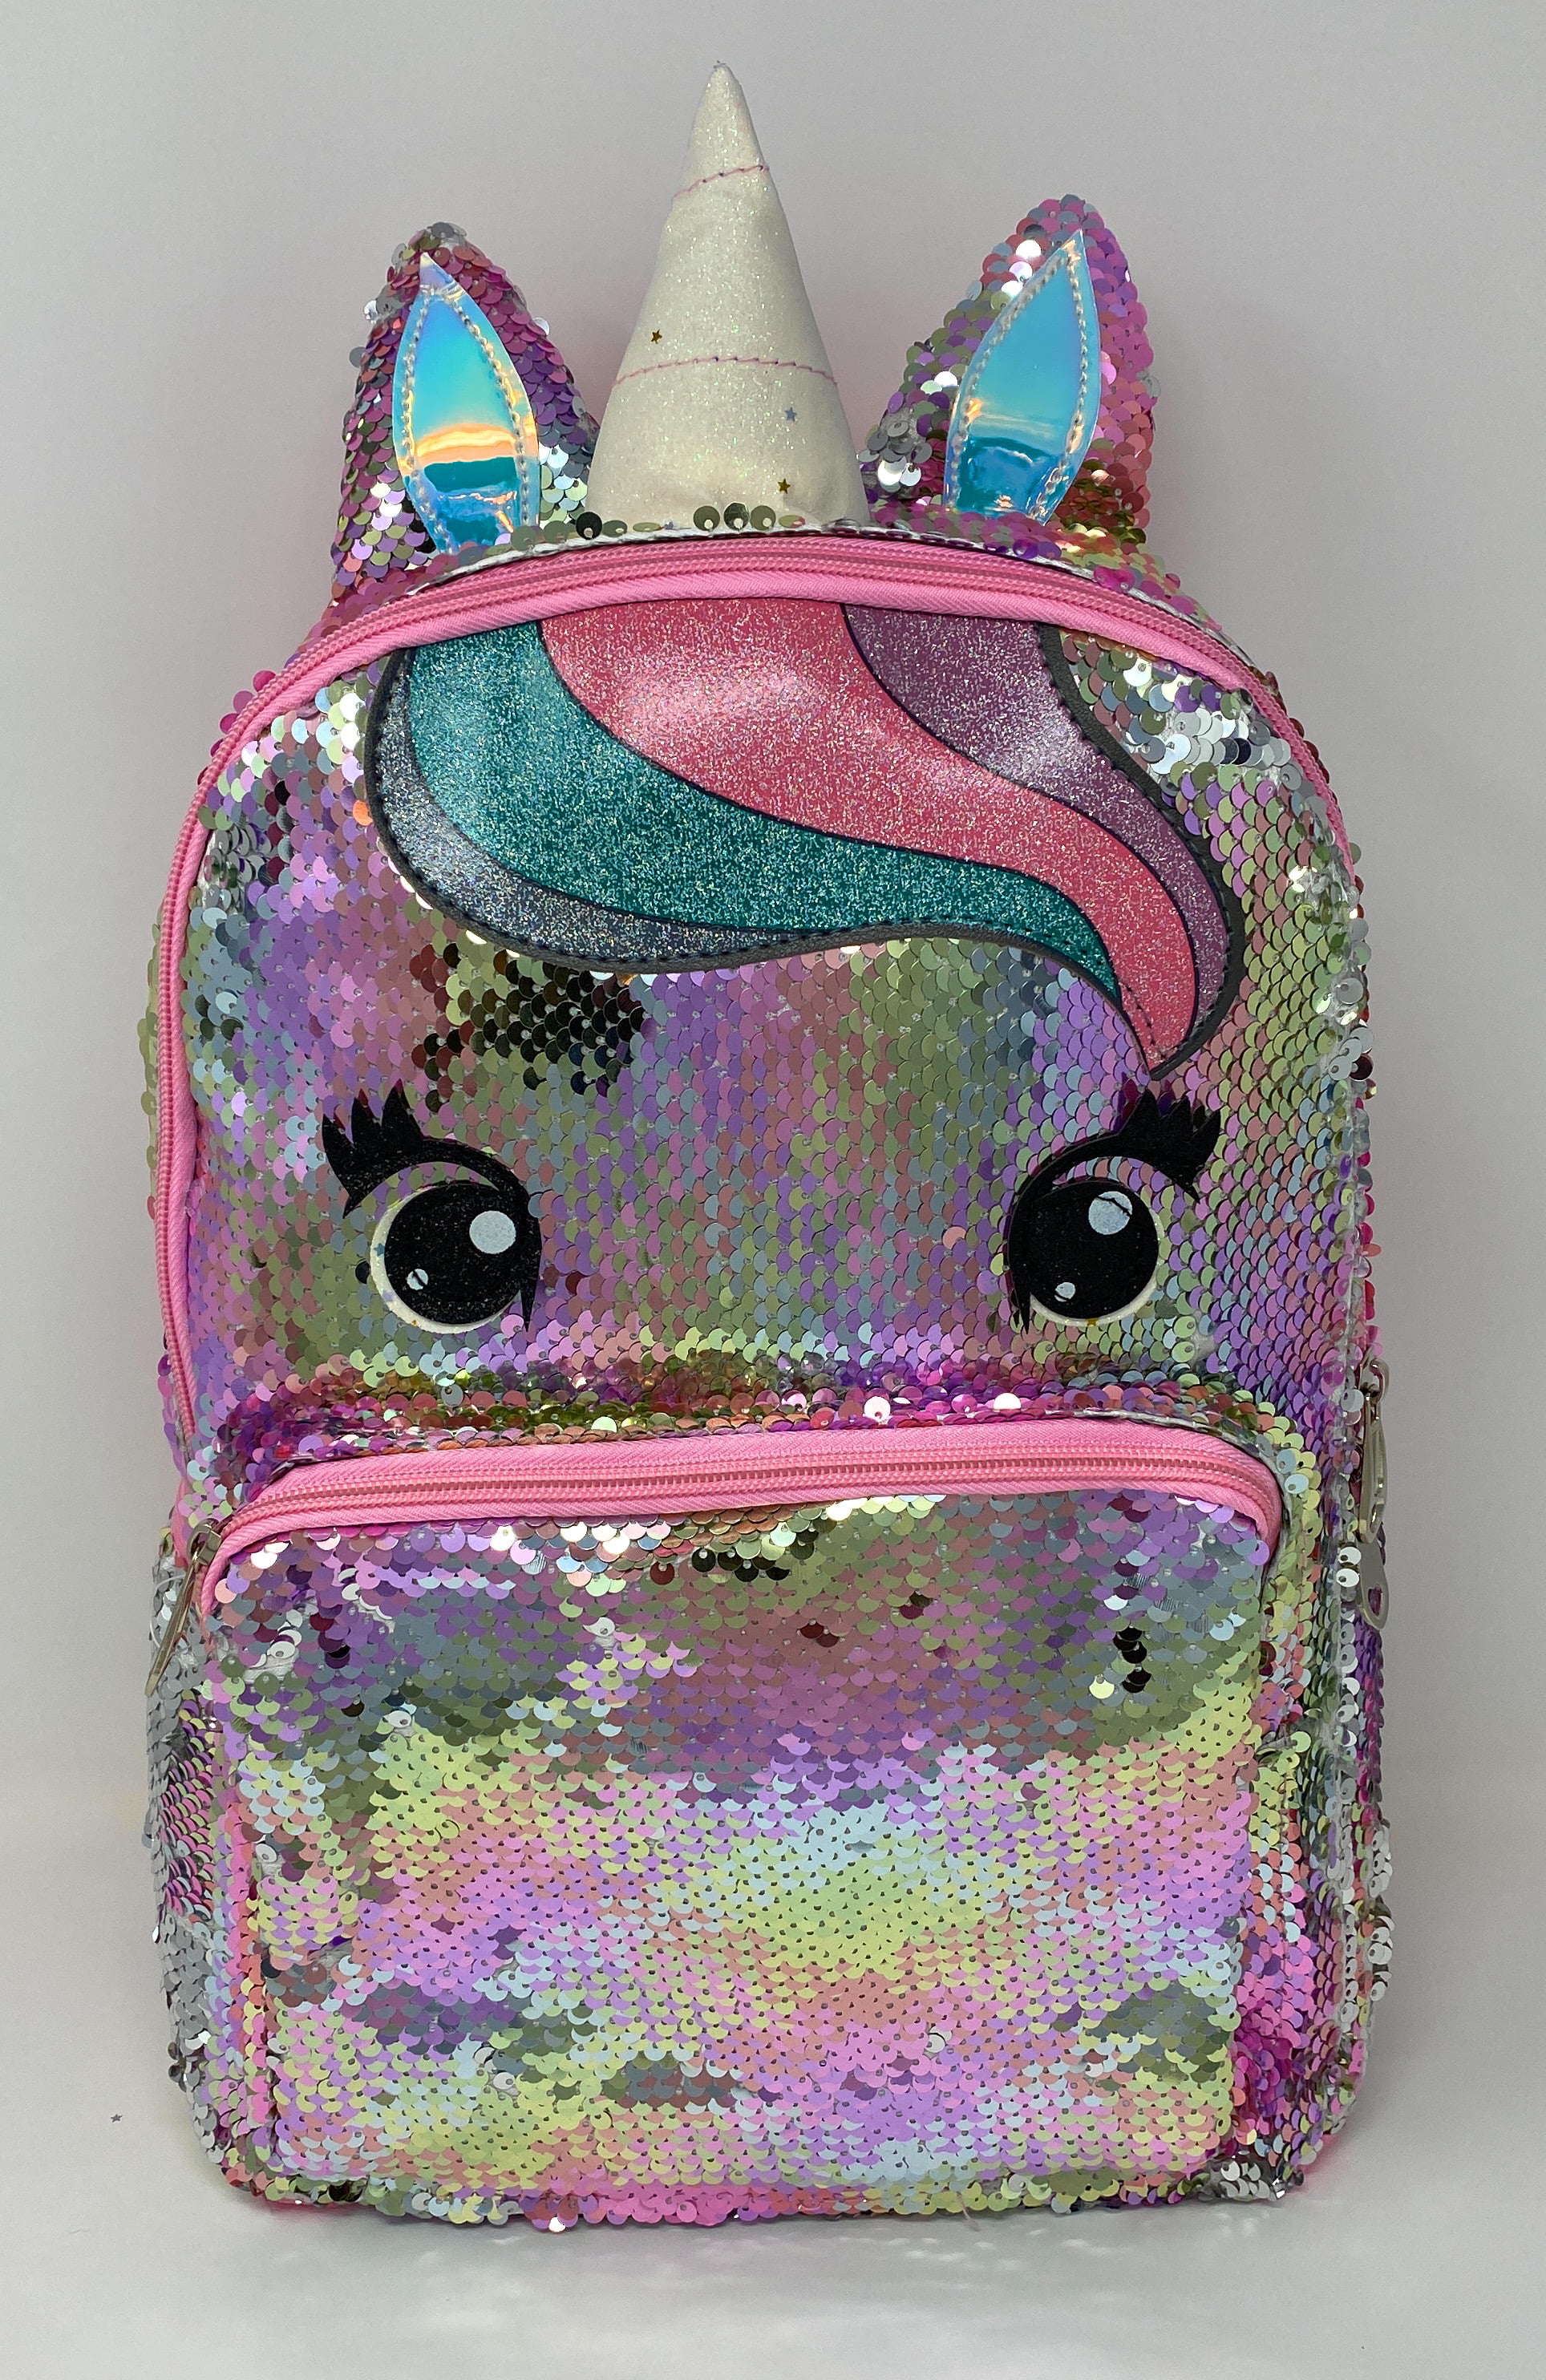 V.I.P. - Unicorn Backpack for Girls Large Sequin School Bag Multi-color